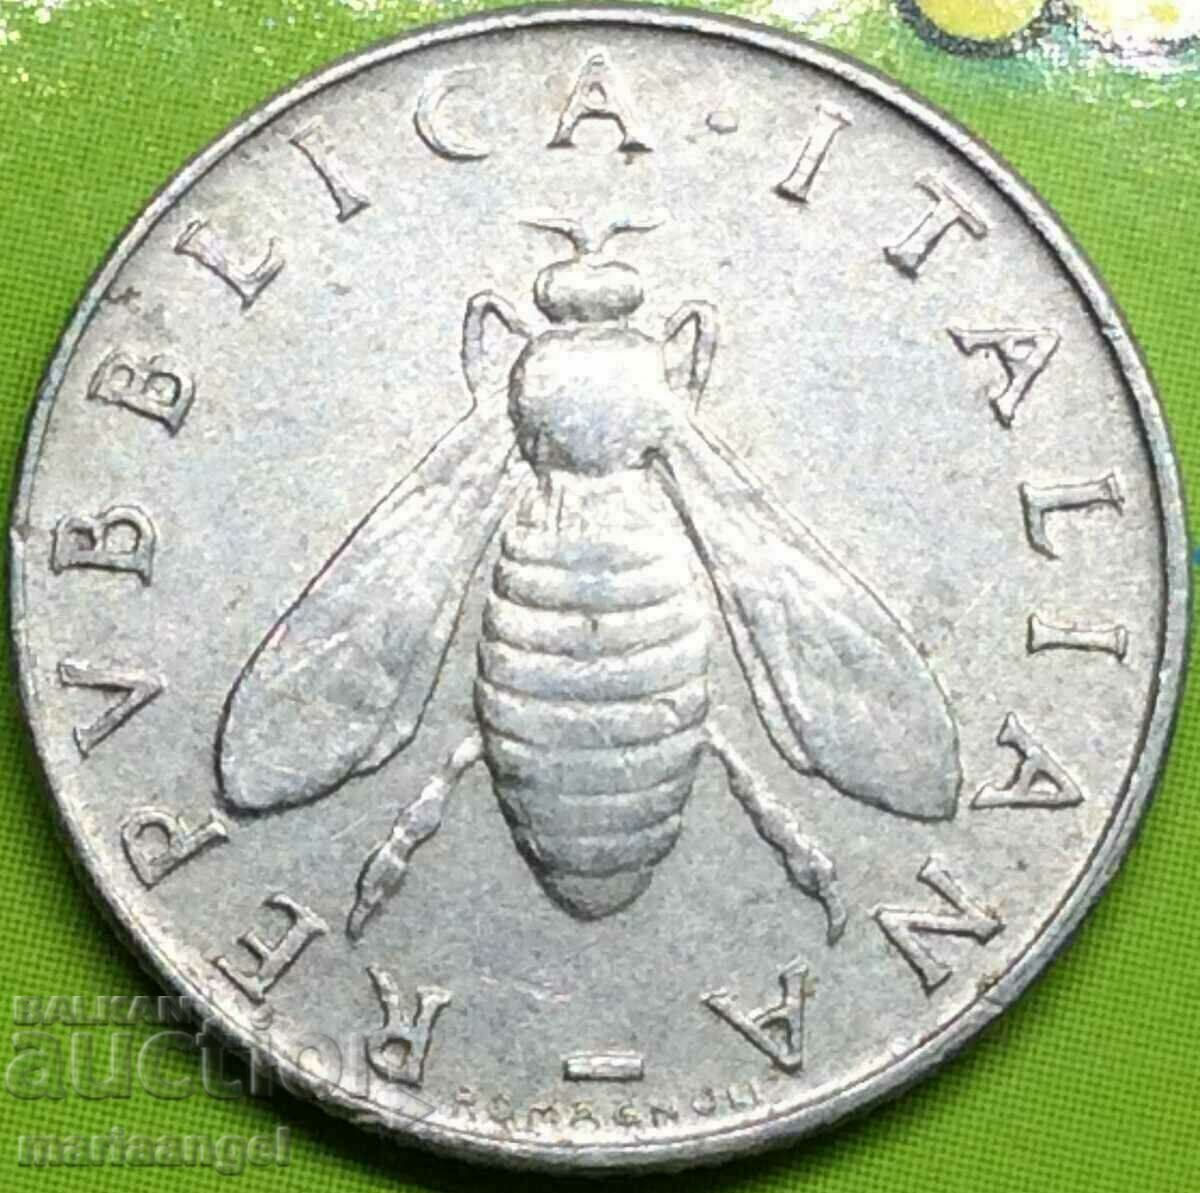 2 lire 1954 Italia aluminiu